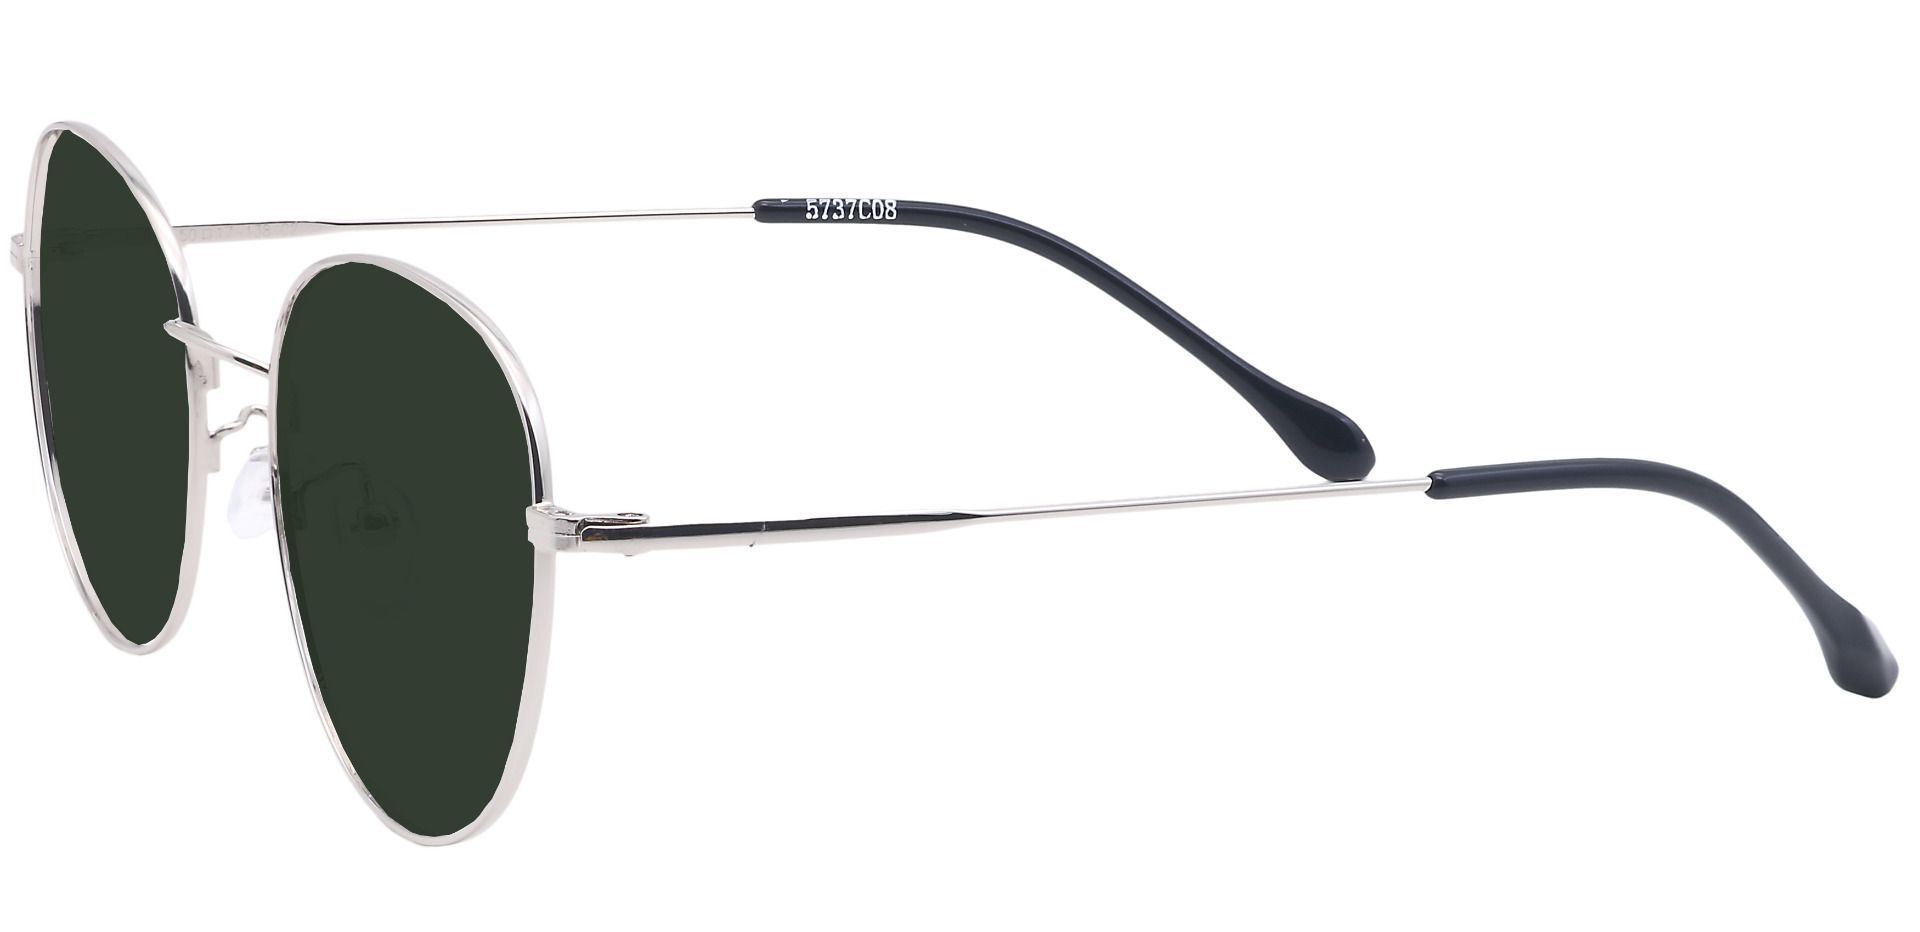 Miller Oval Prescription Sunglasses - Gray Frame With Green Lenses